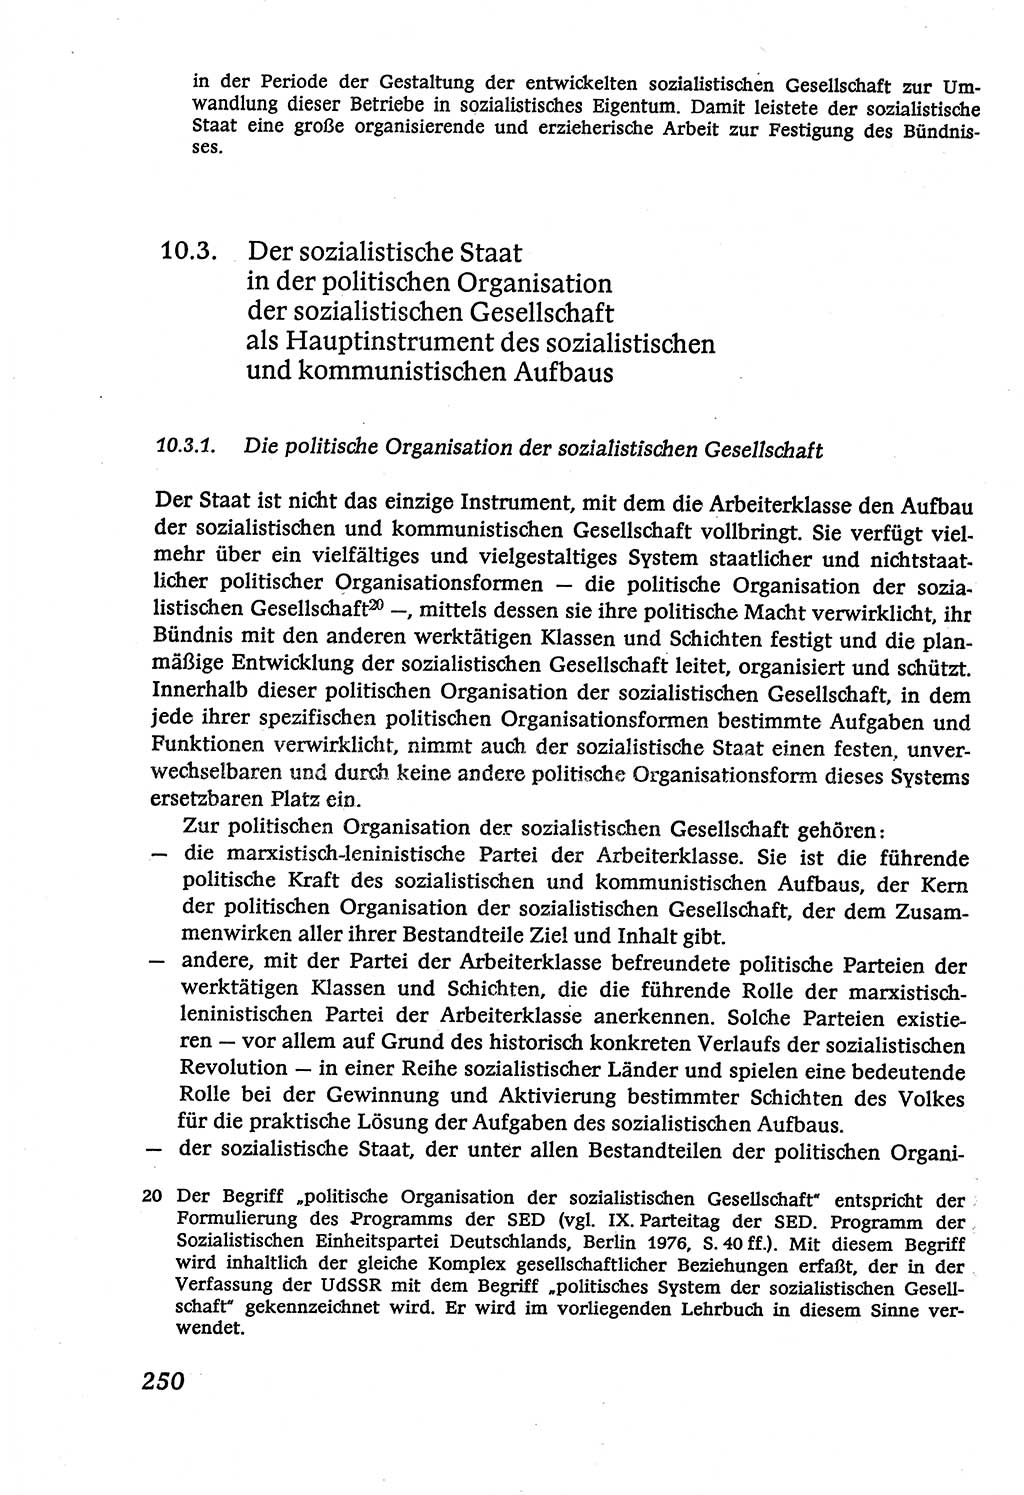 Marxistisch-leninistische (ML) Staats- und Rechtstheorie [Deutsche Demokratische Republik (DDR)], Lehrbuch 1980, Seite 250 (ML St.-R.-Th. DDR Lb. 1980, S. 250)